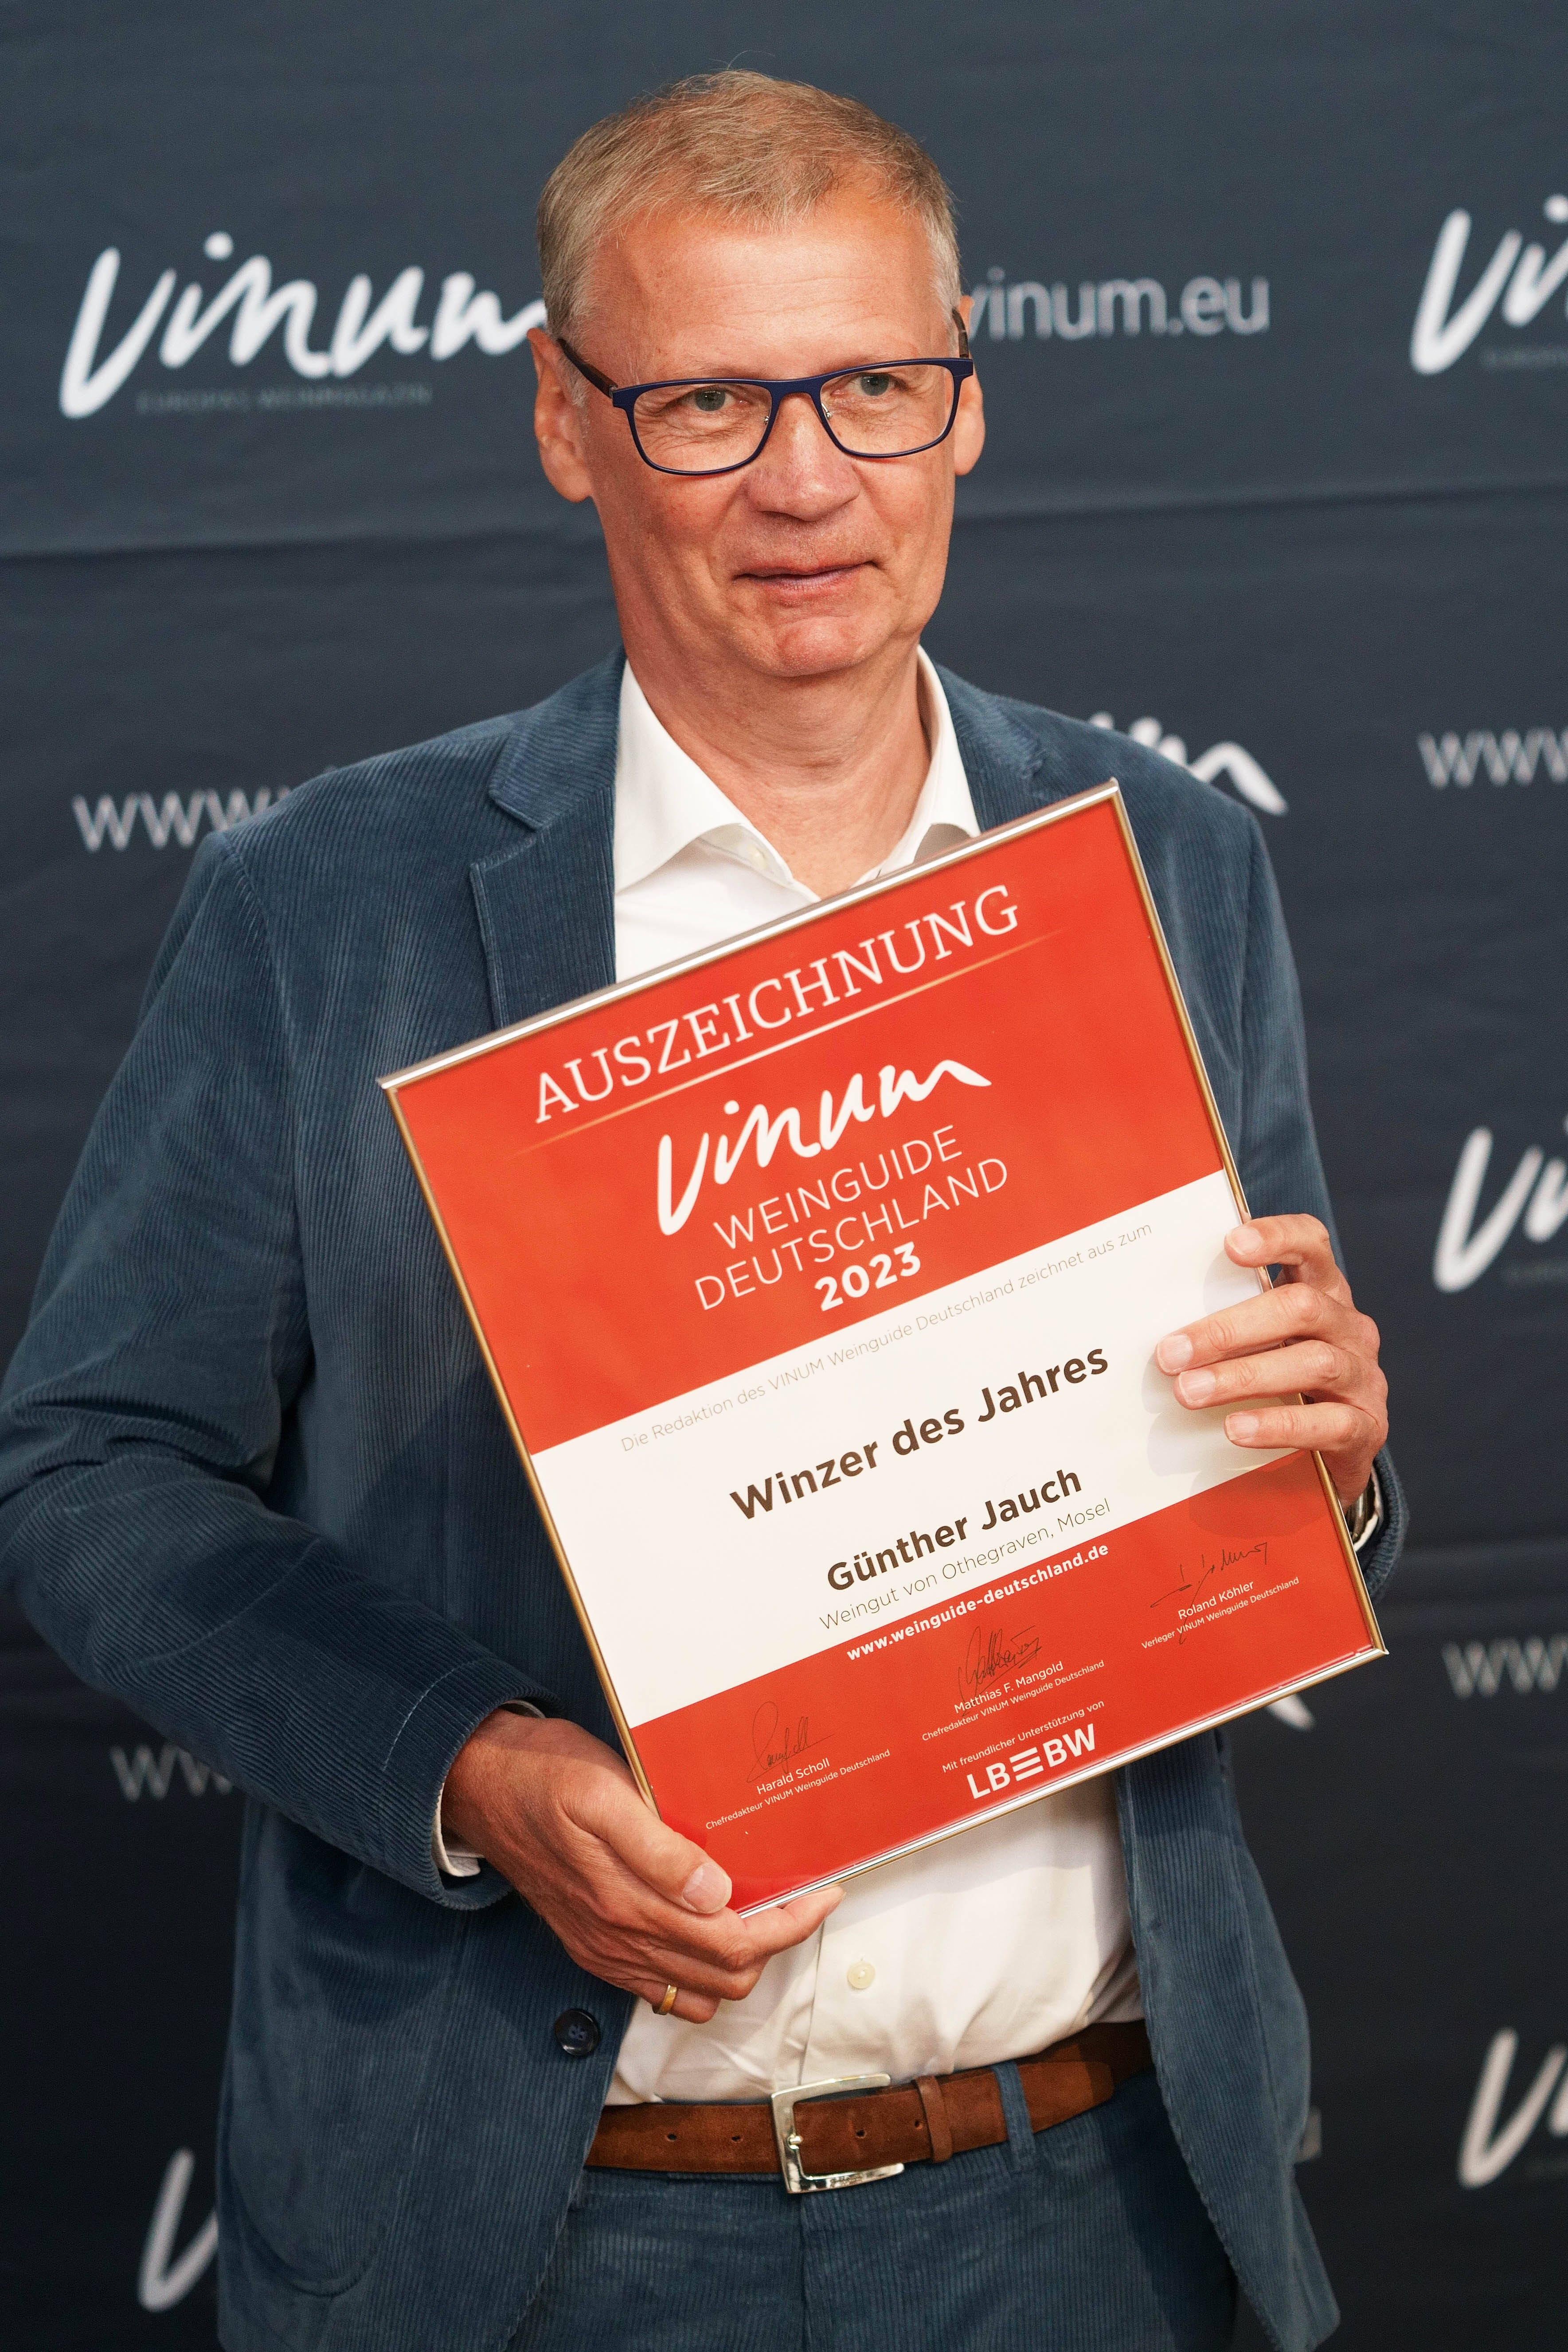 Günther Jauch: "Wer wird Millionär"-Moderator ist Winzer des Jahres